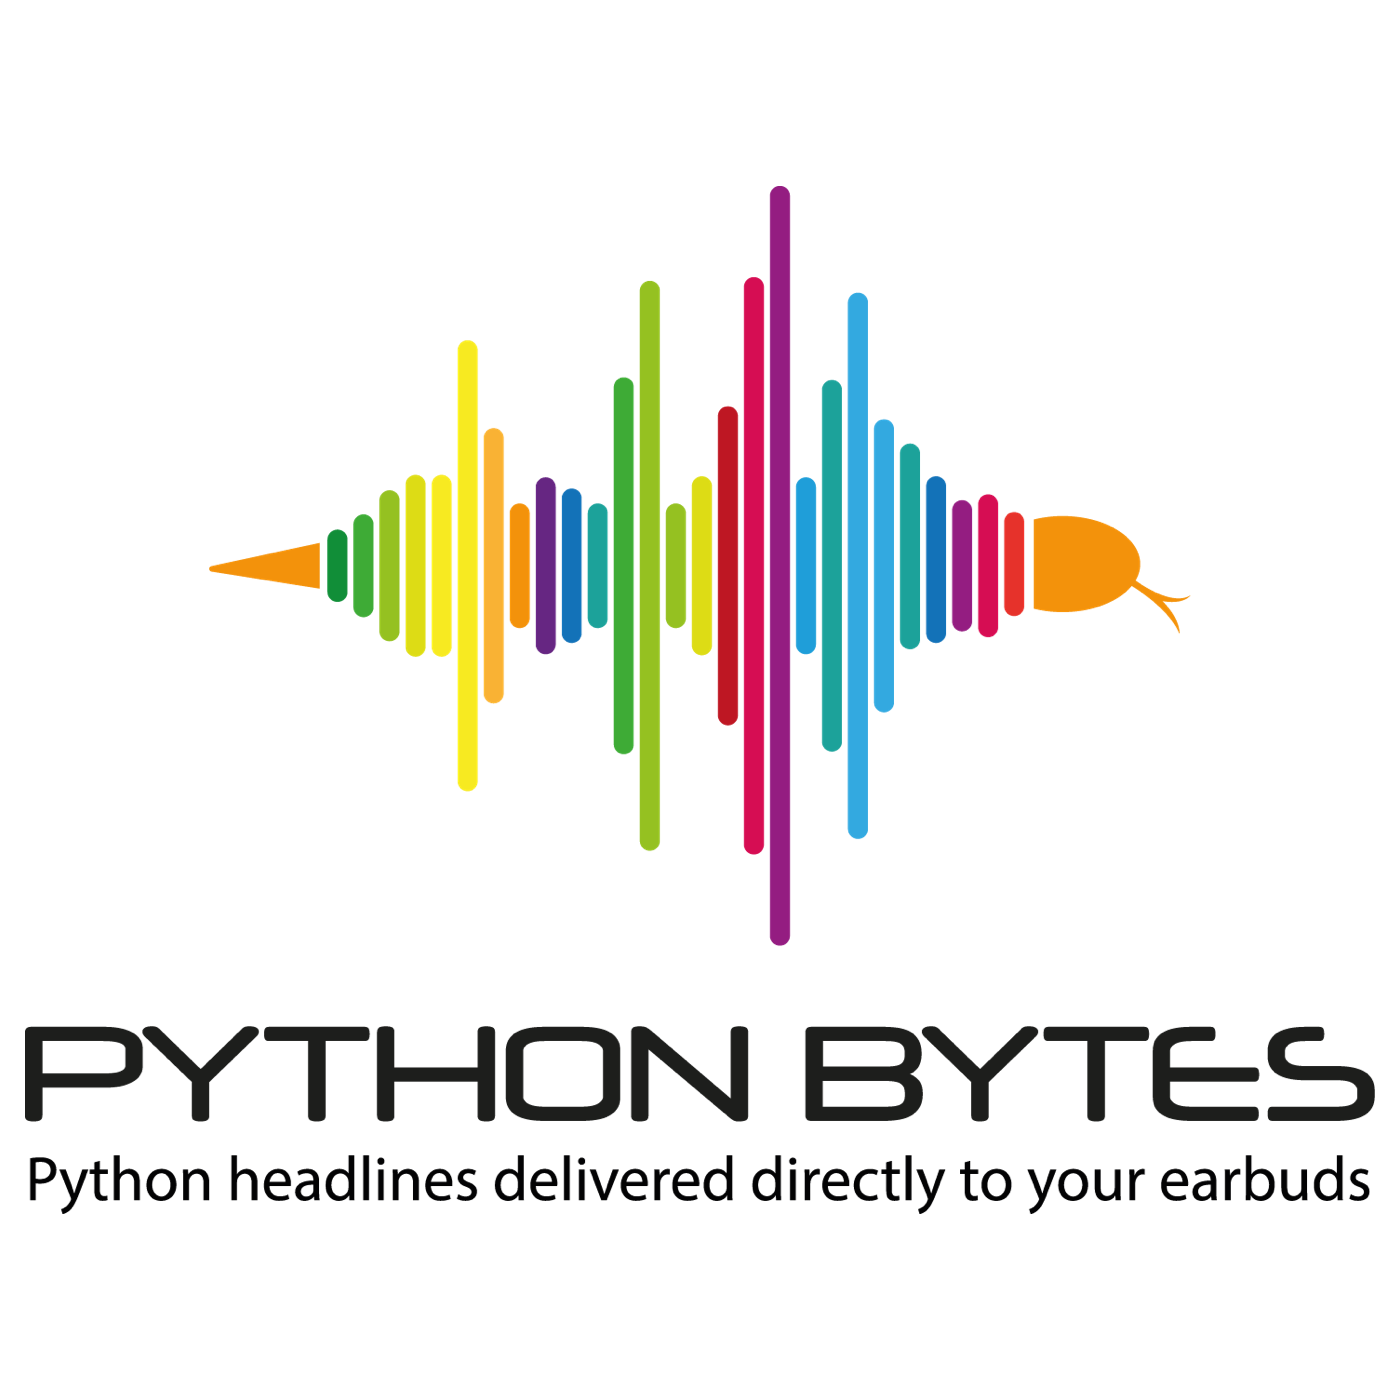 PythonBytes